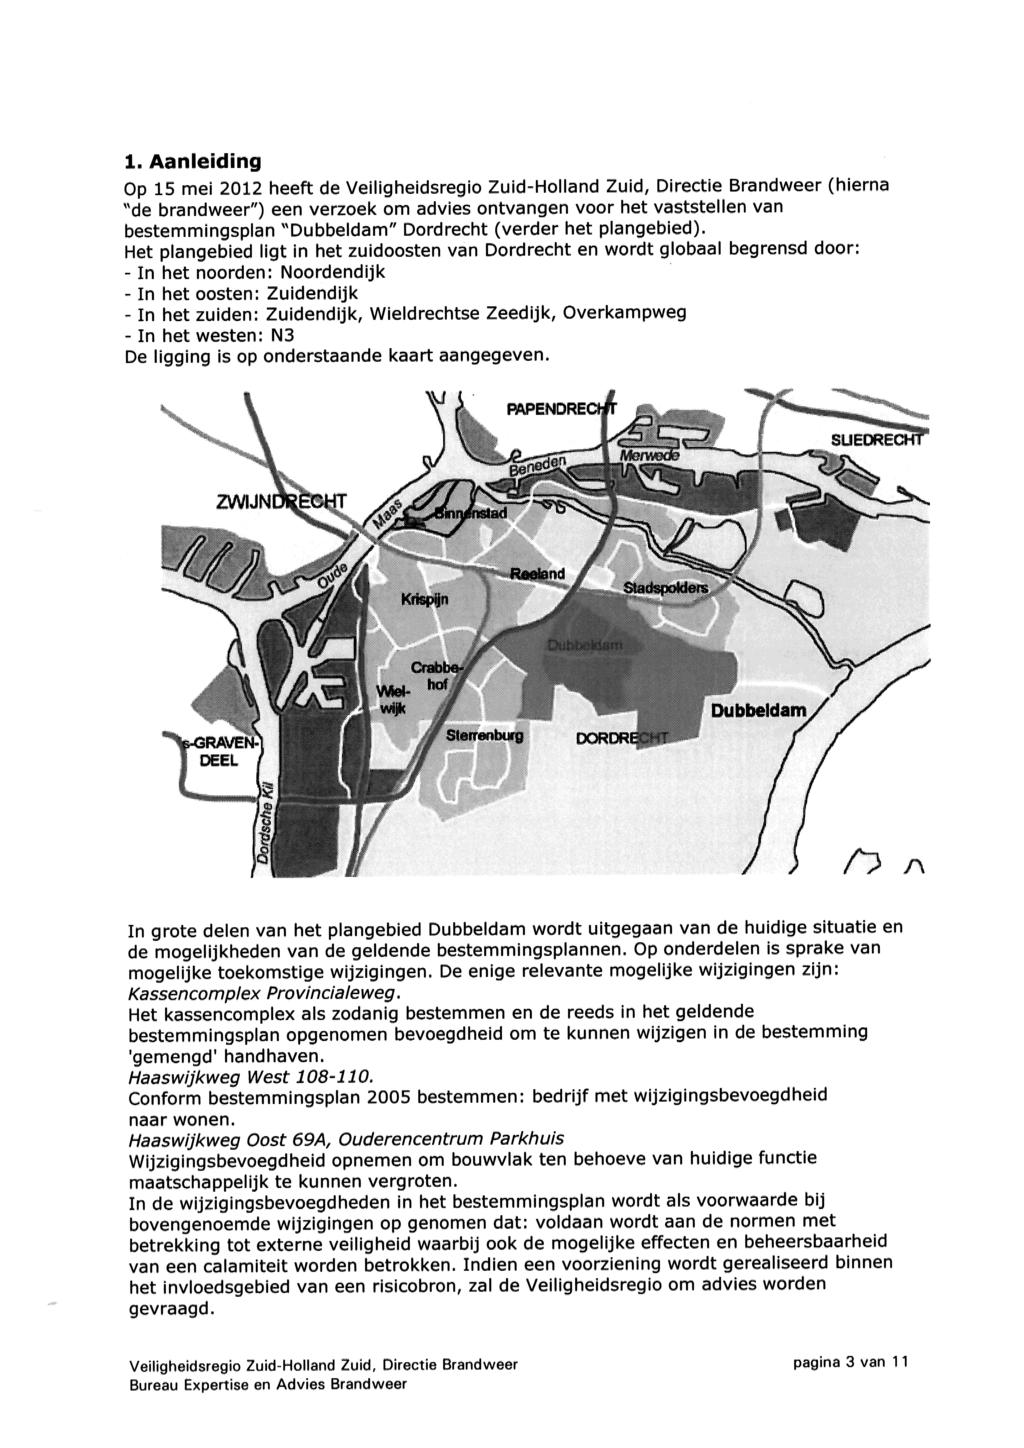 1, Aanleiding Op 15 mei 2012 heeft de VeiÜgheidsregio Zuid-Holland Zuid, Directie Brandweer (hierna "de brandweer") een verzoek om advies ontvangen voor het vaststellen van bestemmingsplan